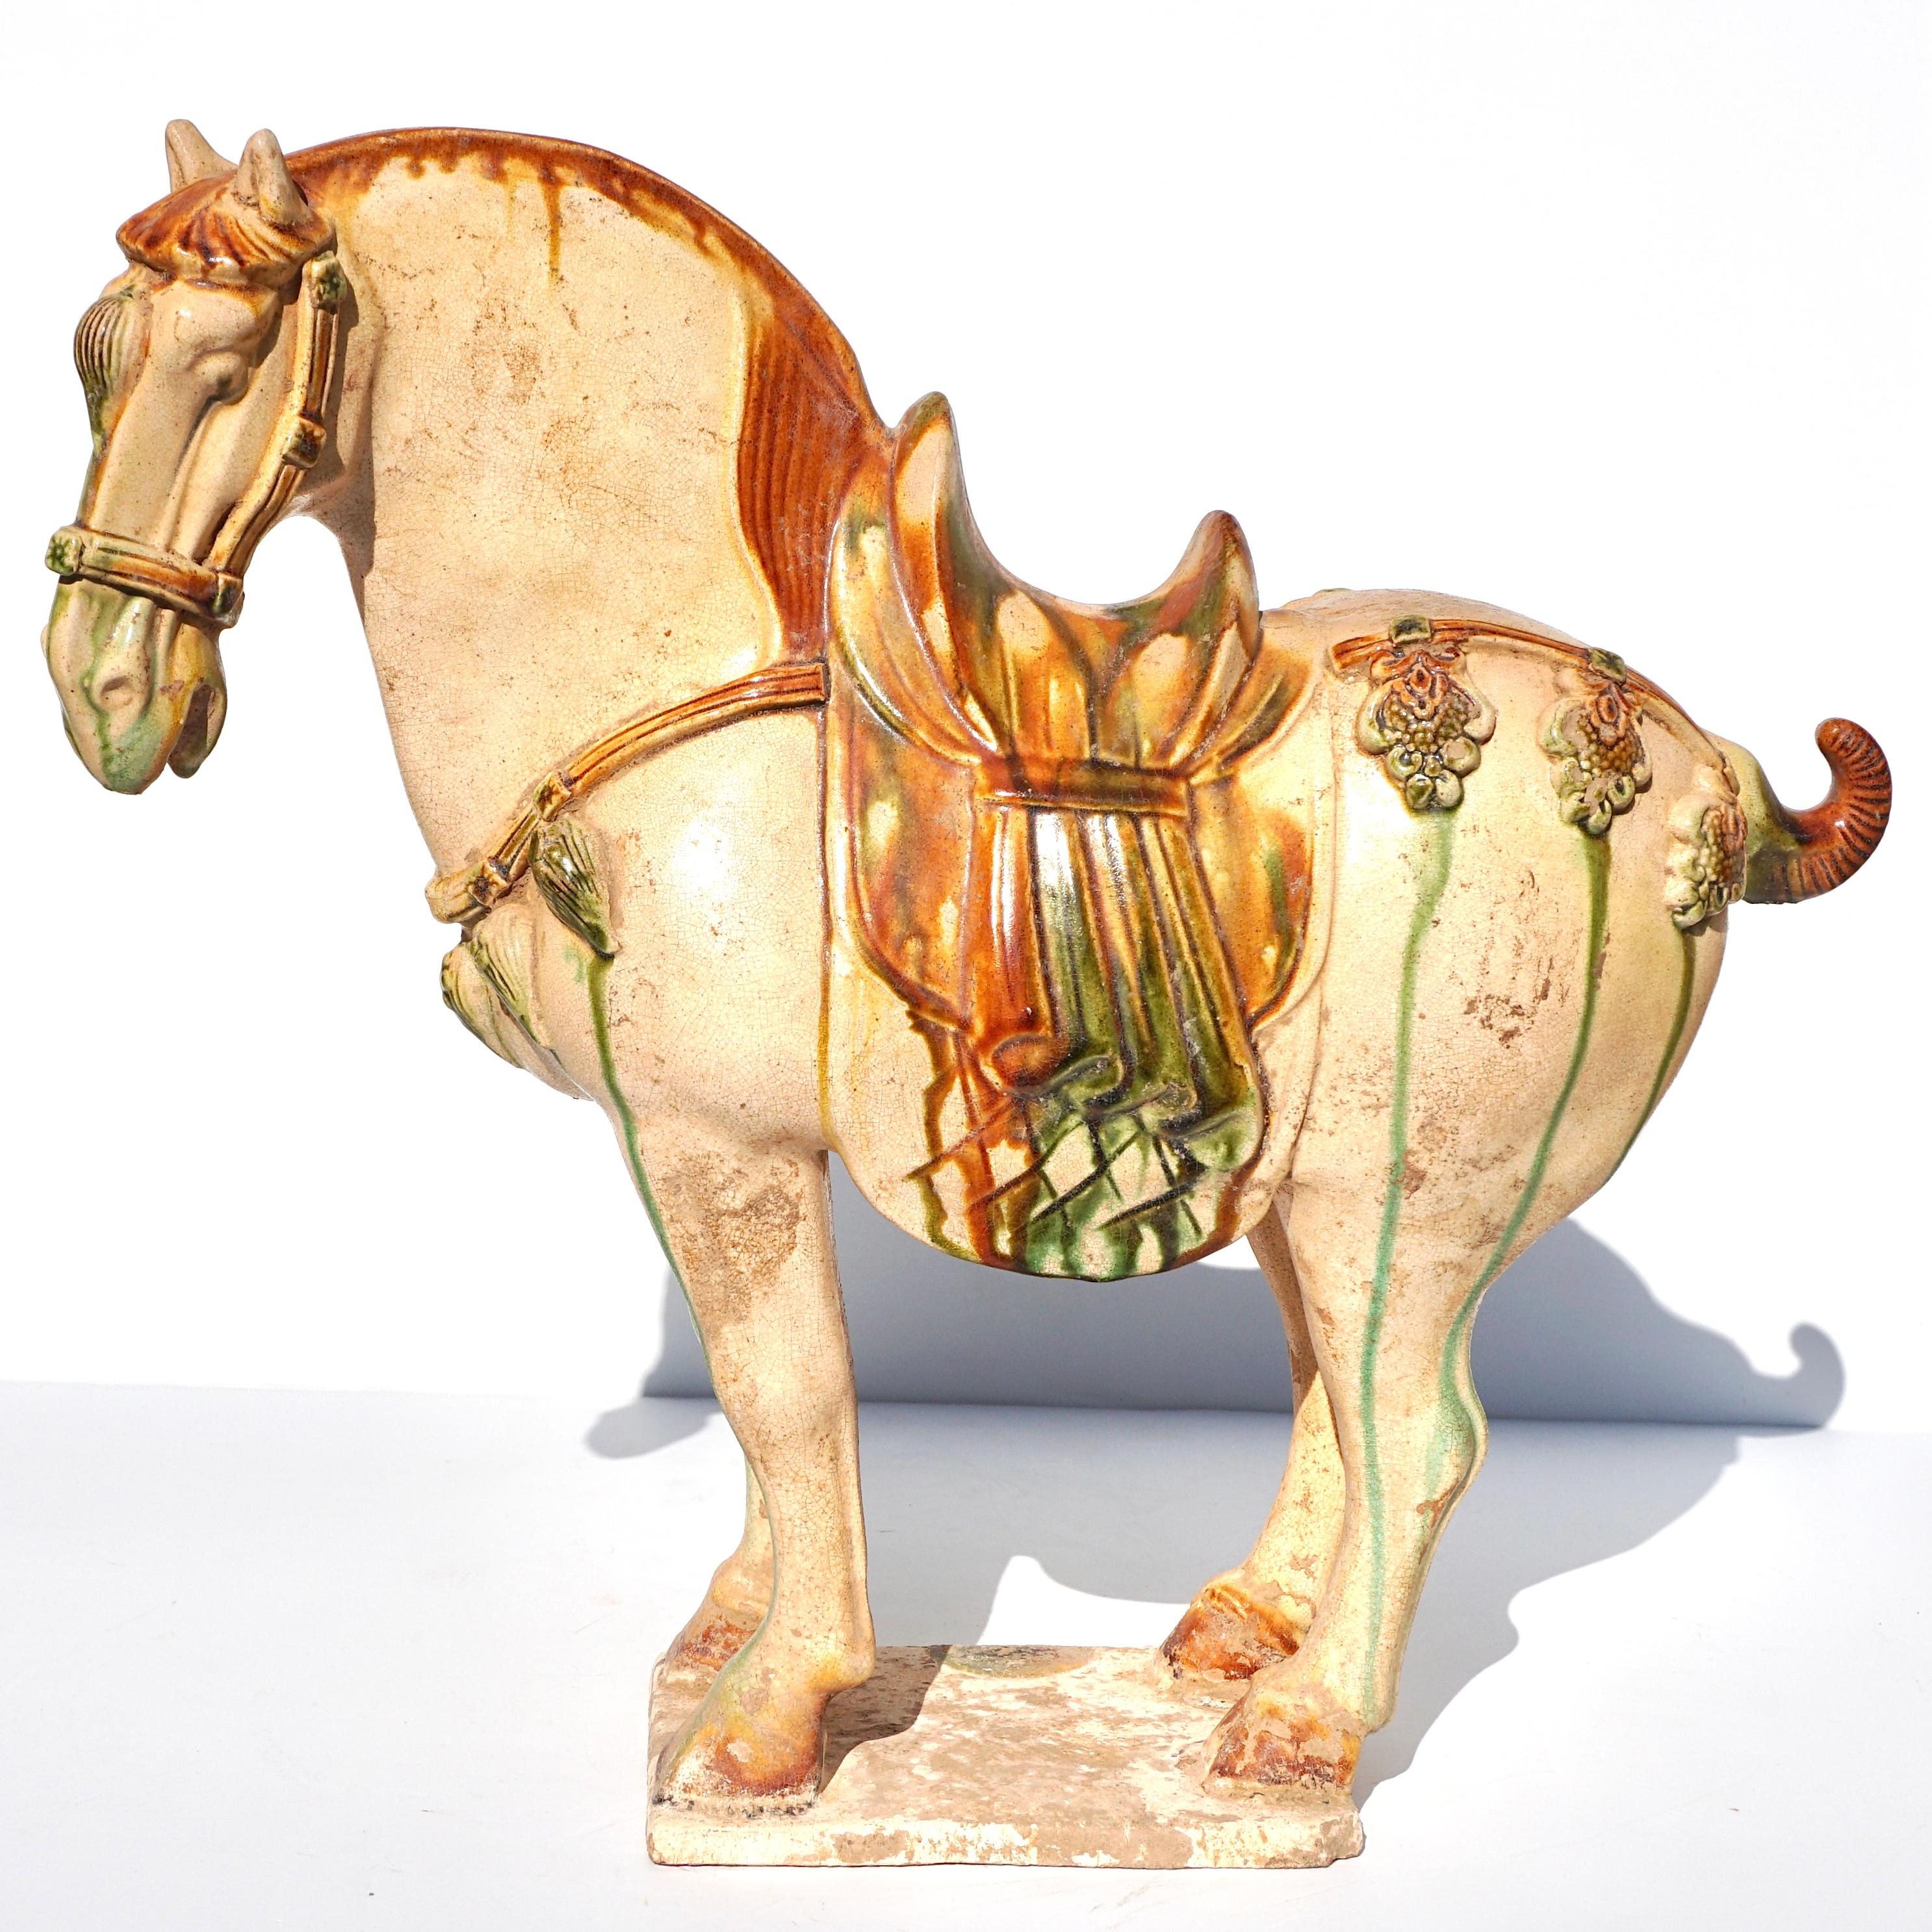 Tang-Dynastie (618 - 907) Sancai glasiertes Keramikpferd

Das cremefarben glasierte Pferd steht naturalistisch modelliert auf einem rechteckigen Sockel, wobei Mähne, Schweif und Hufe mit bernsteinfarbener Glasur hervorgehoben sind. Der Kopf ist